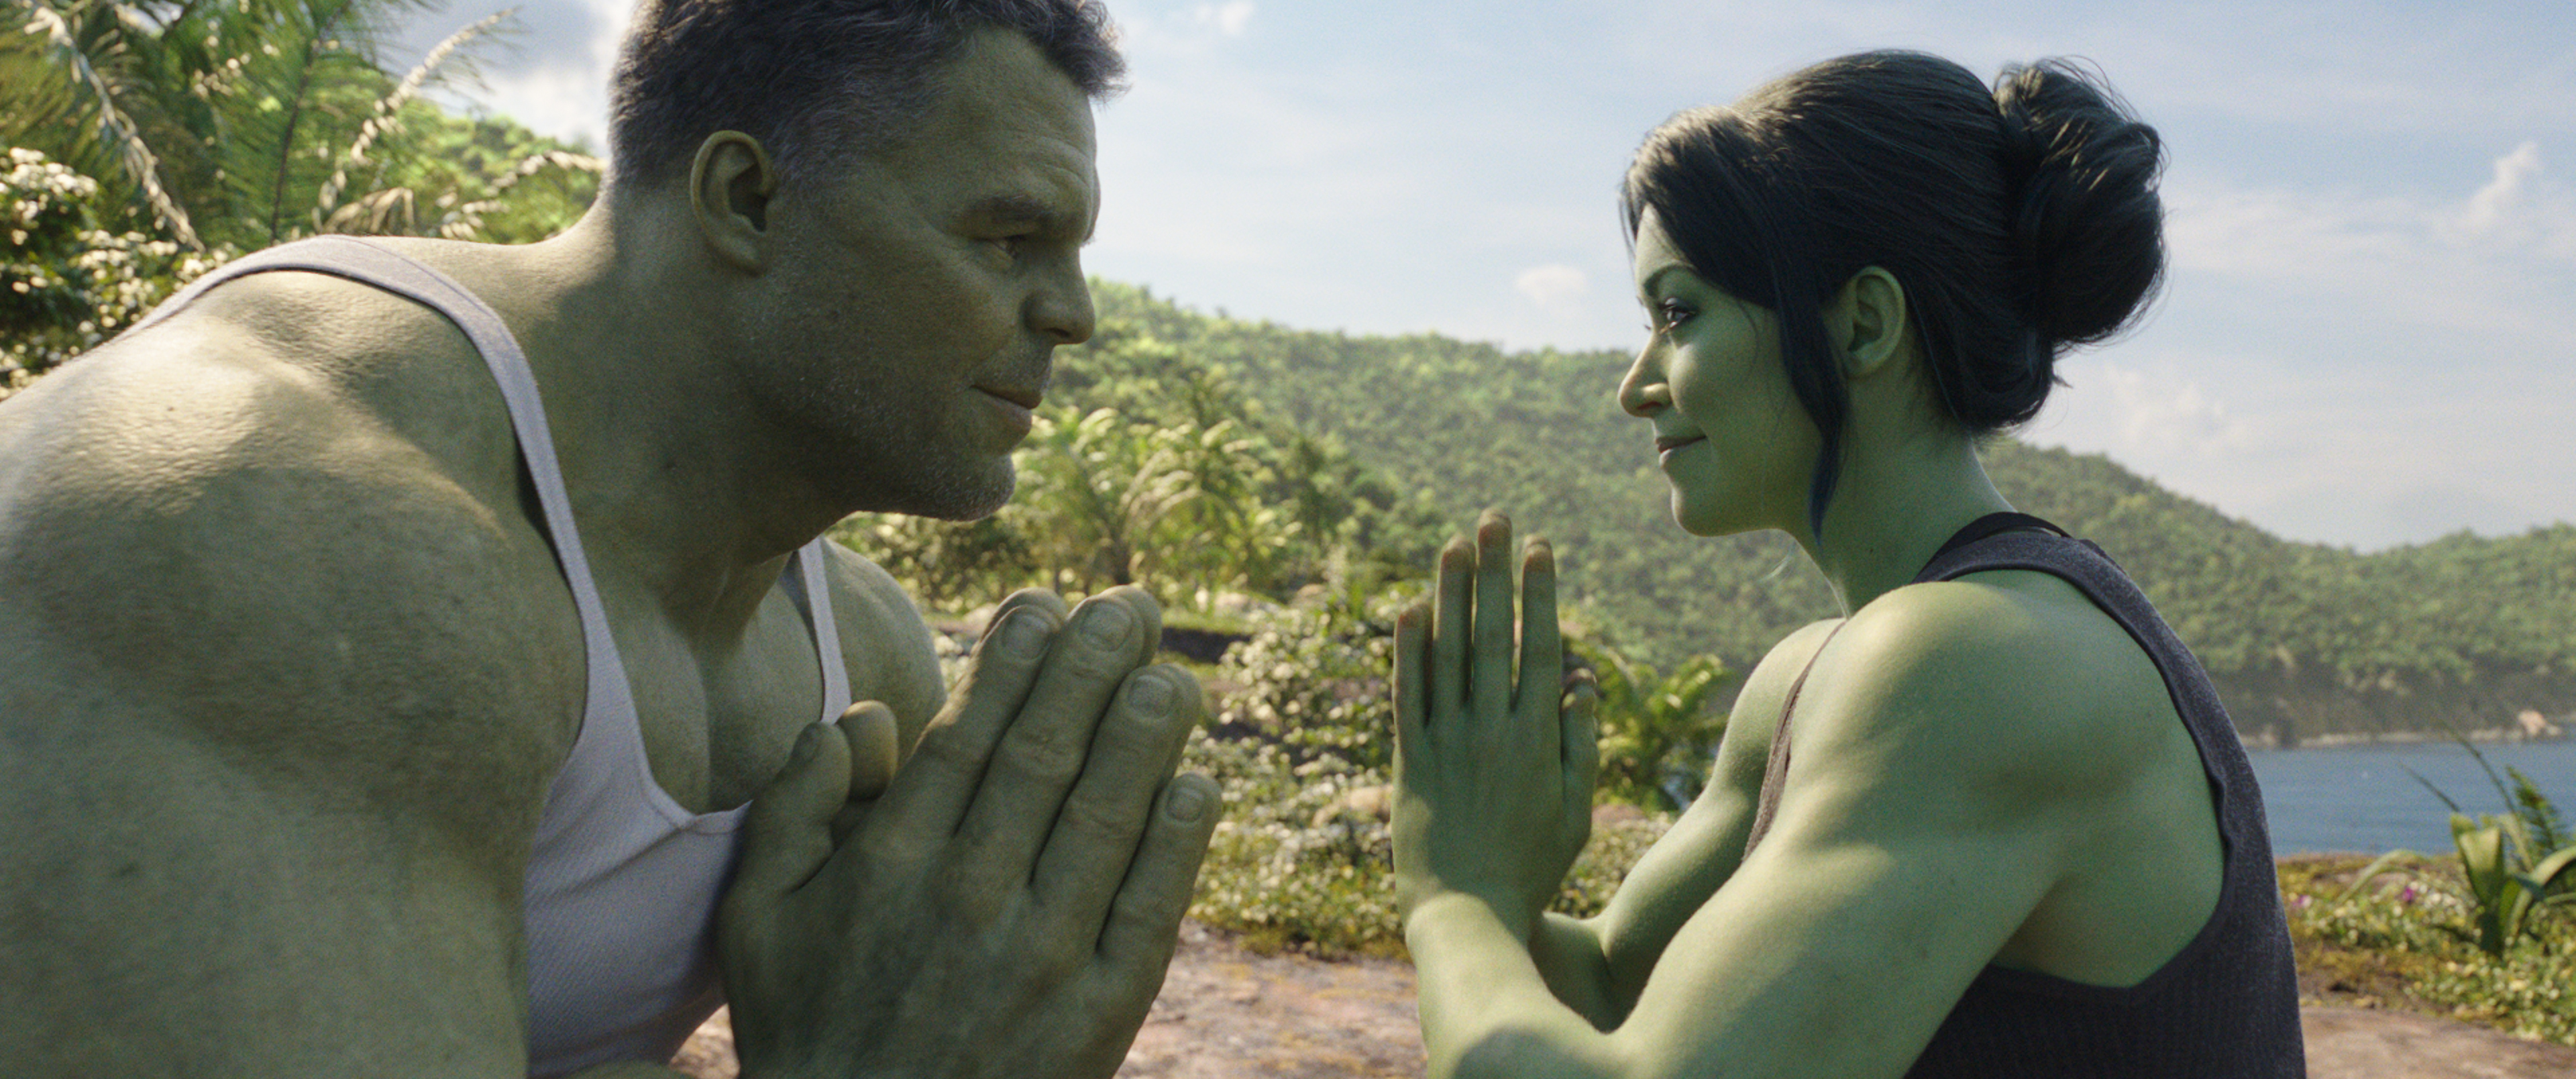 Universo Marvel Brasil on X: She-Hulk teve um suposto orçamento de US$ 225  Milhões (Via: @Variety)  / X